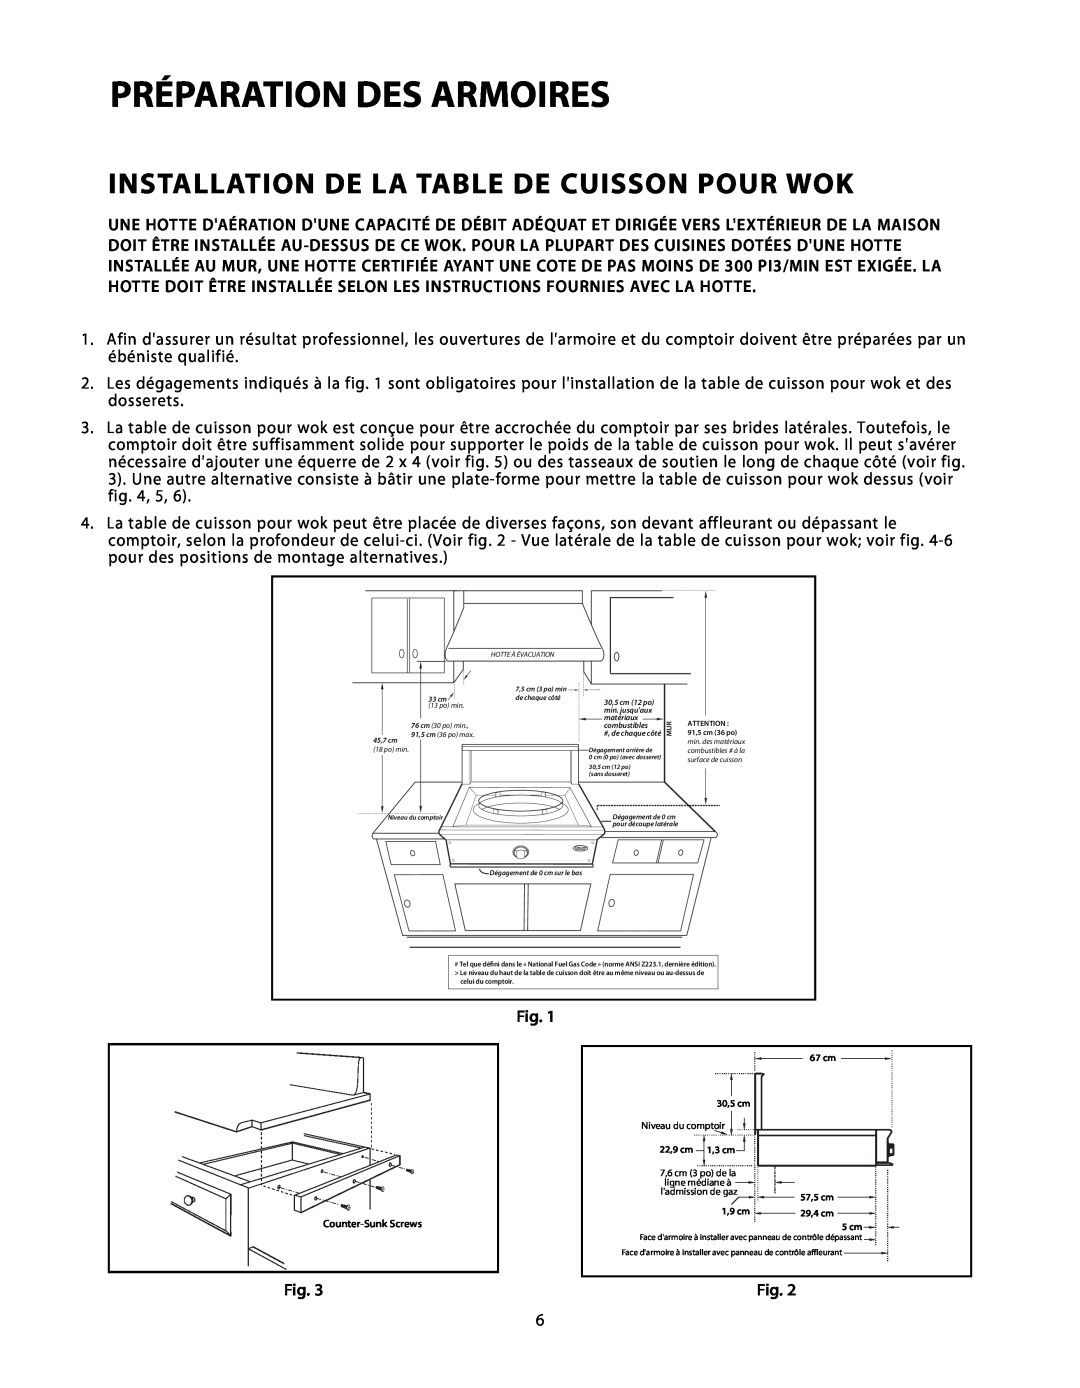 DCS C-24 installation instructions Préparation Des Armoires, Installation De La Table De Cuisson Pour Wok 